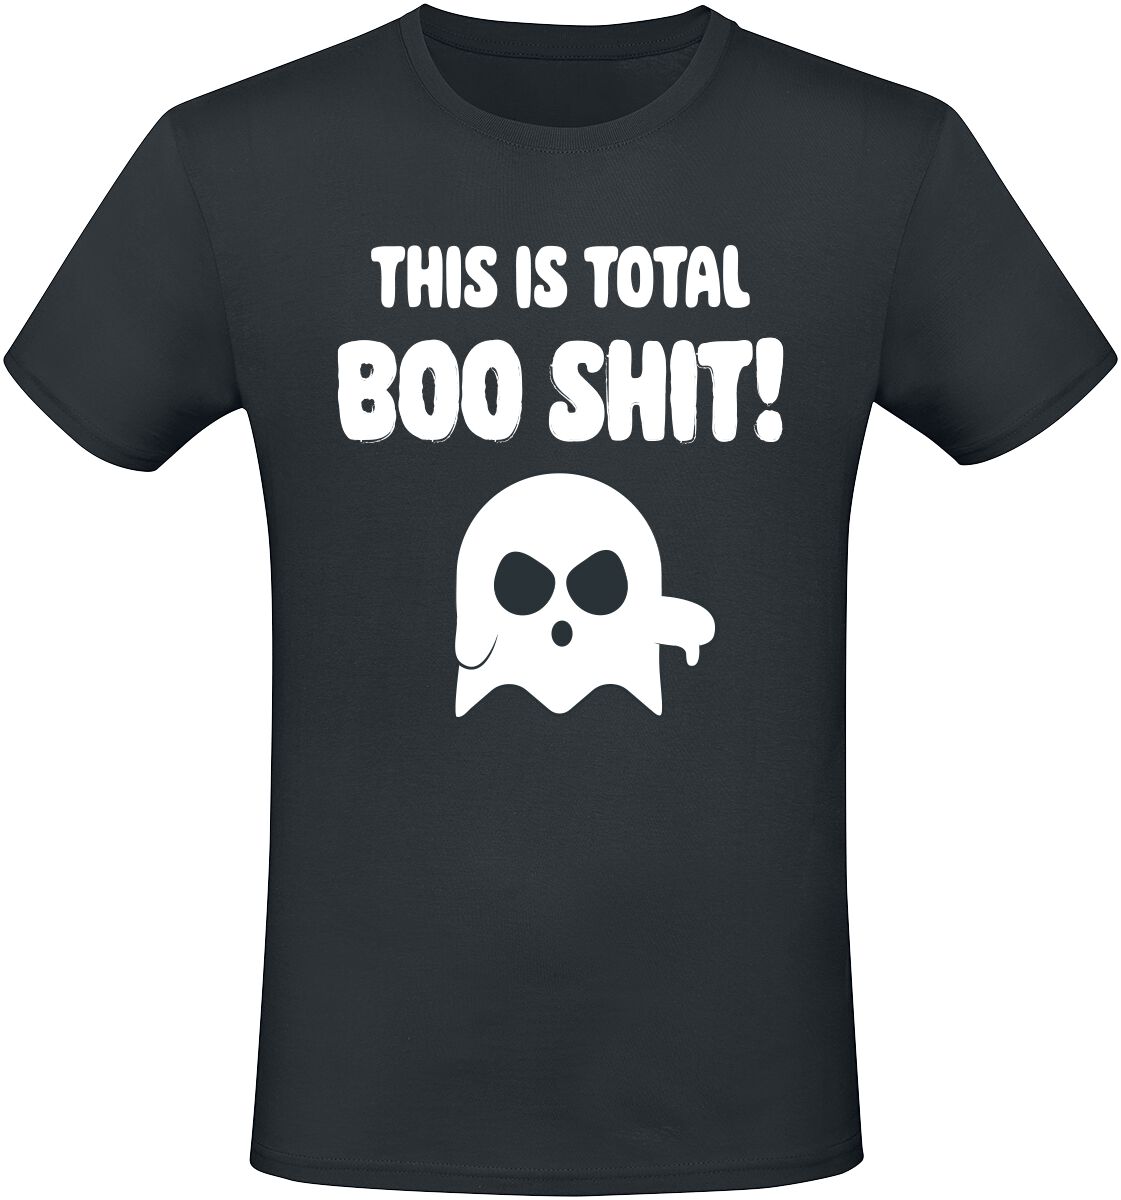 Sprüche This Is Total Boo Shit! T-Shirt schwarz in M